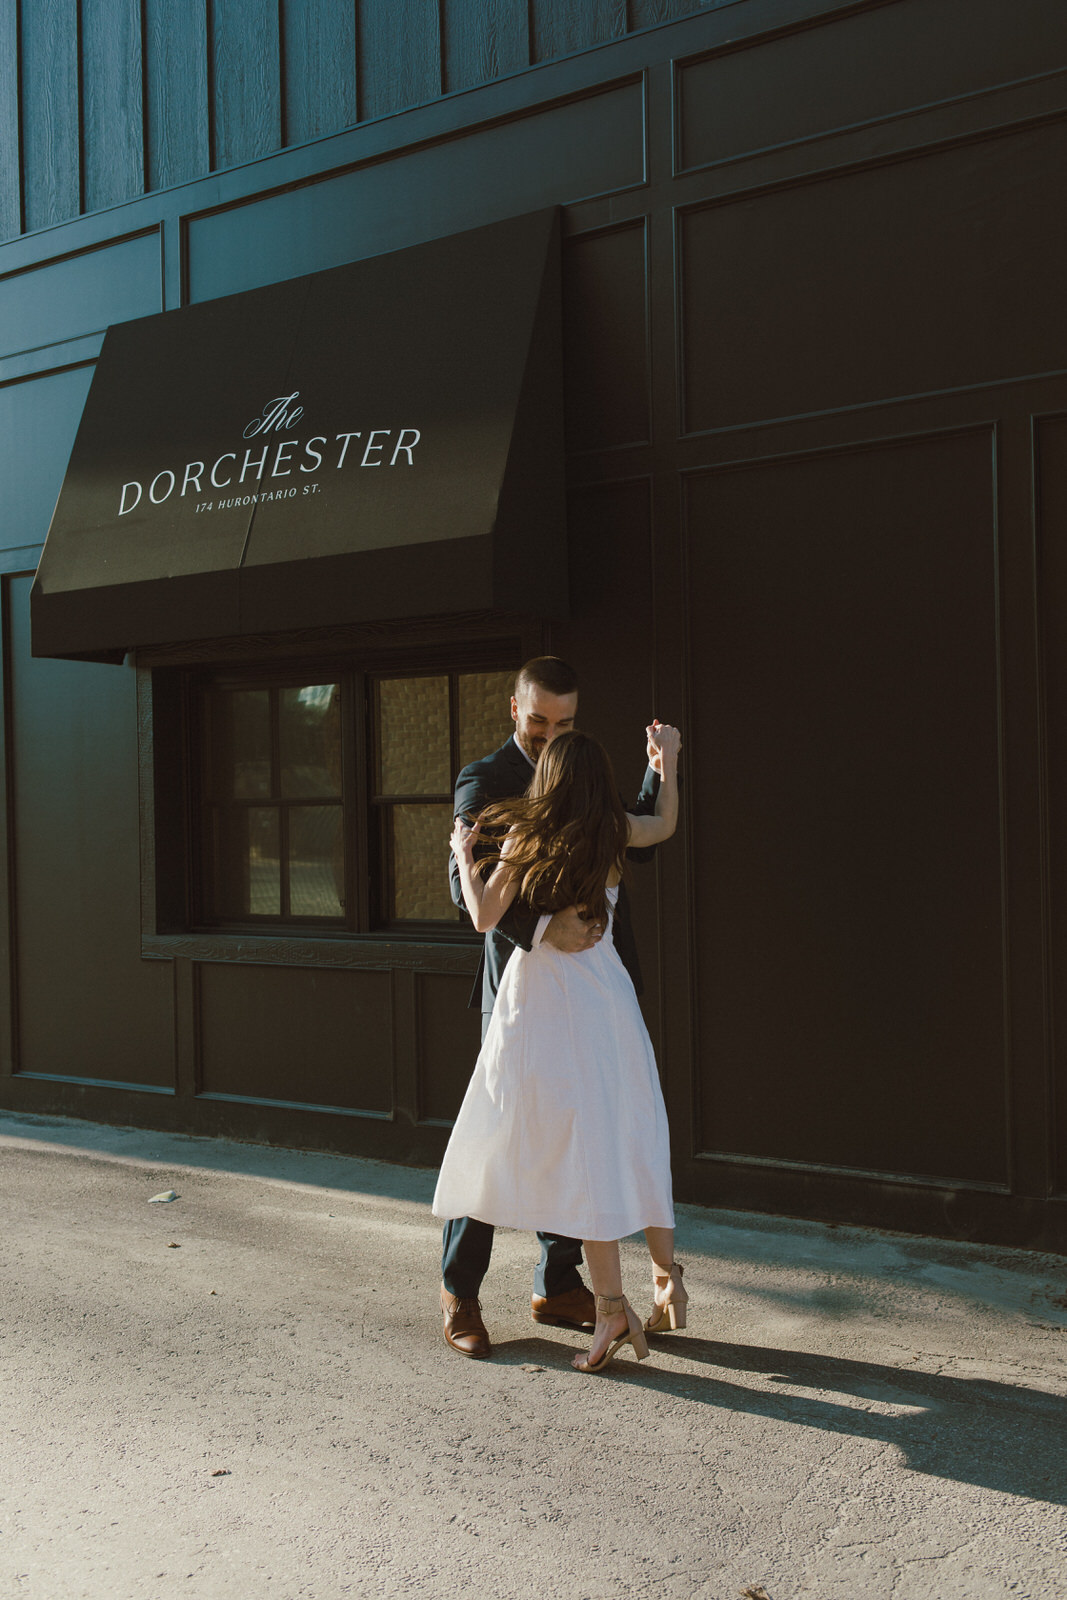 the dorchester hotel photos